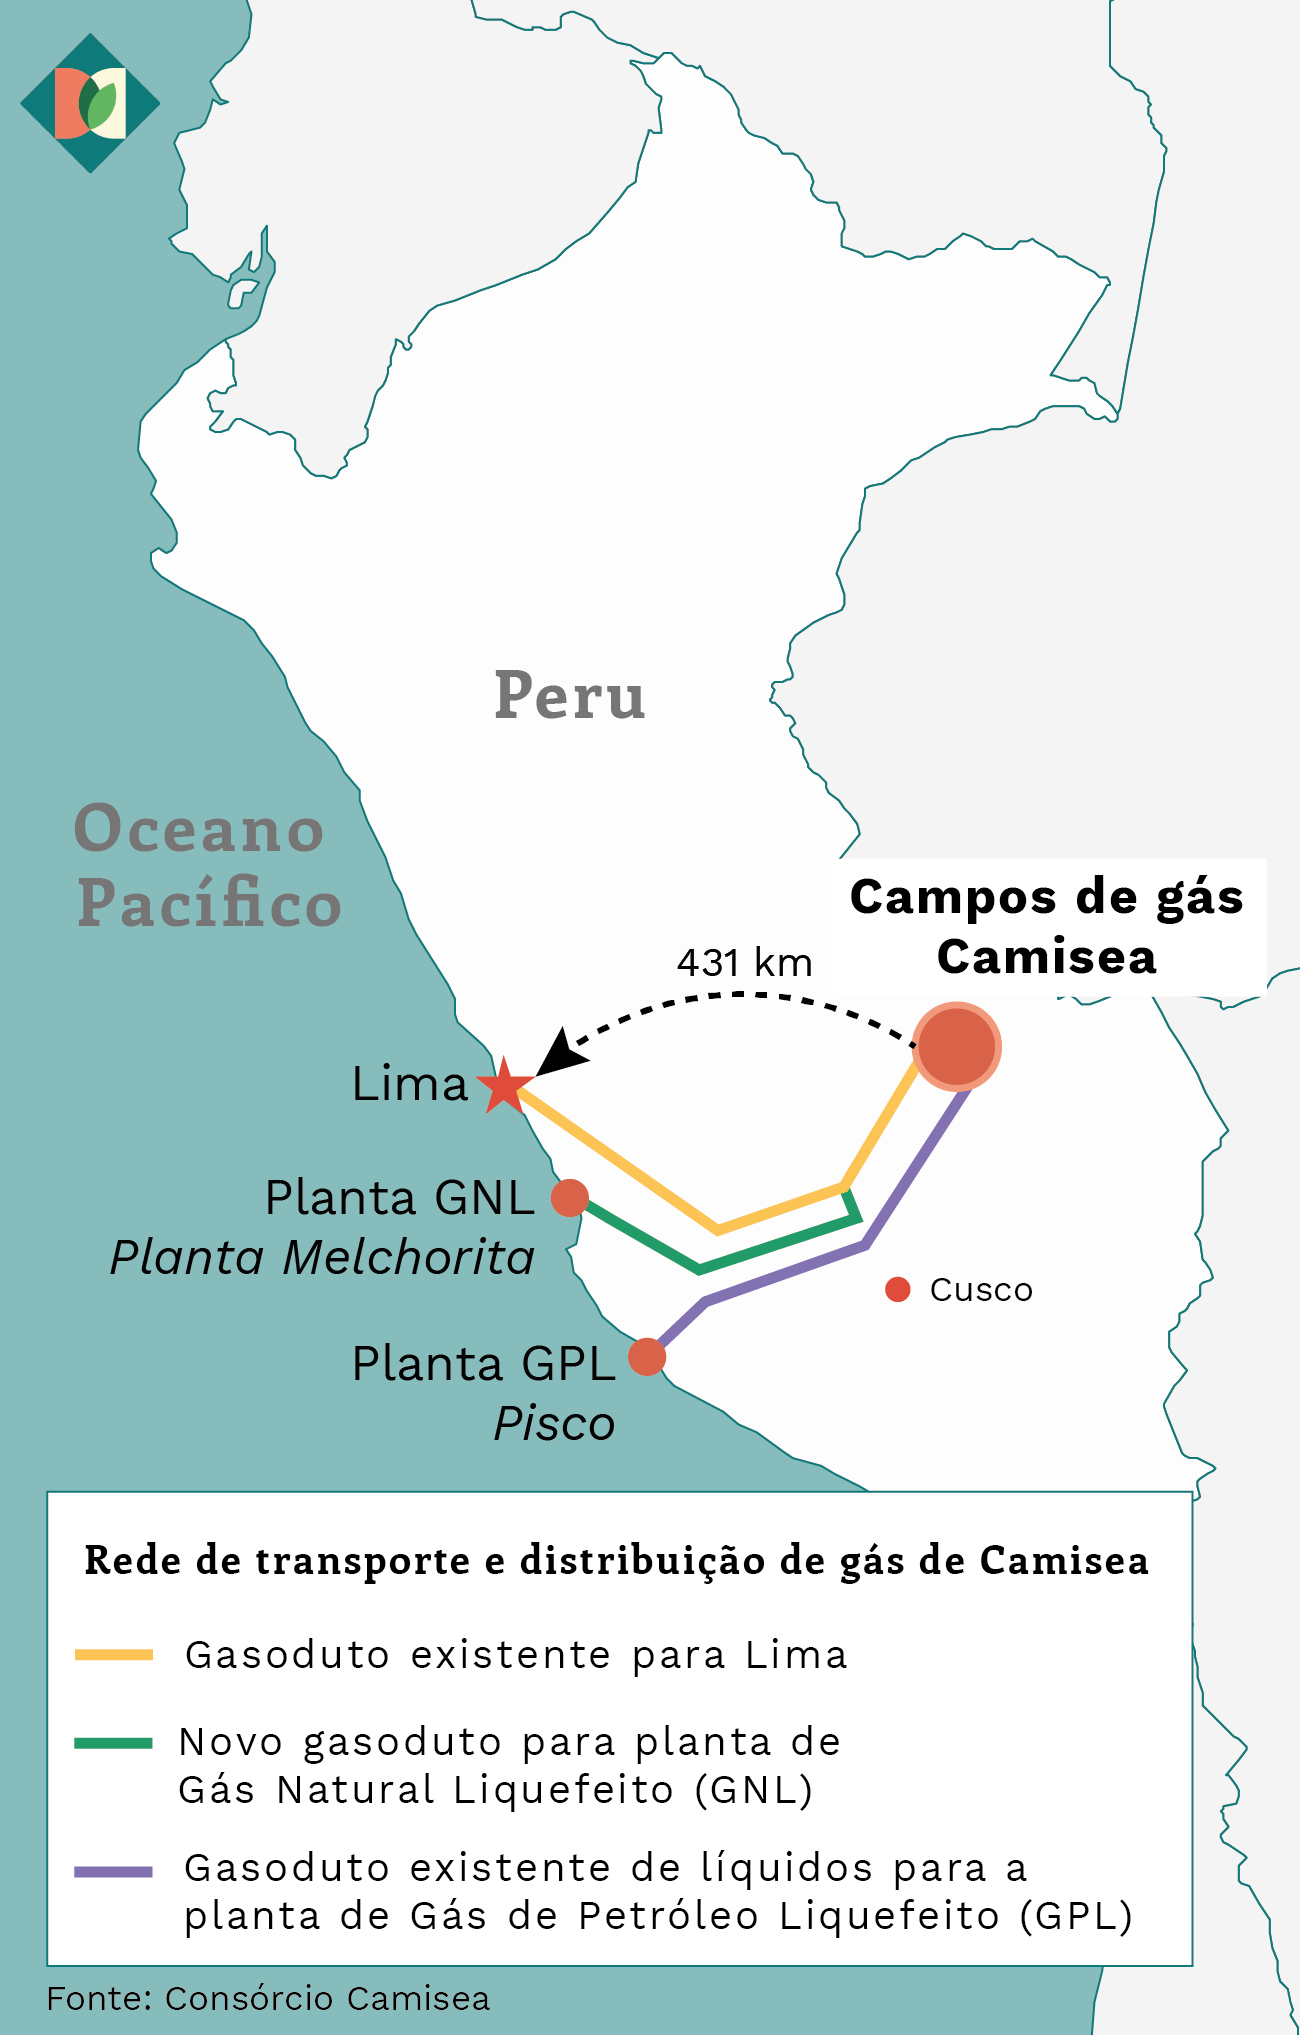 Mapa mostrando a localização da usina de gás natural de Camisea e a distribuição de gás